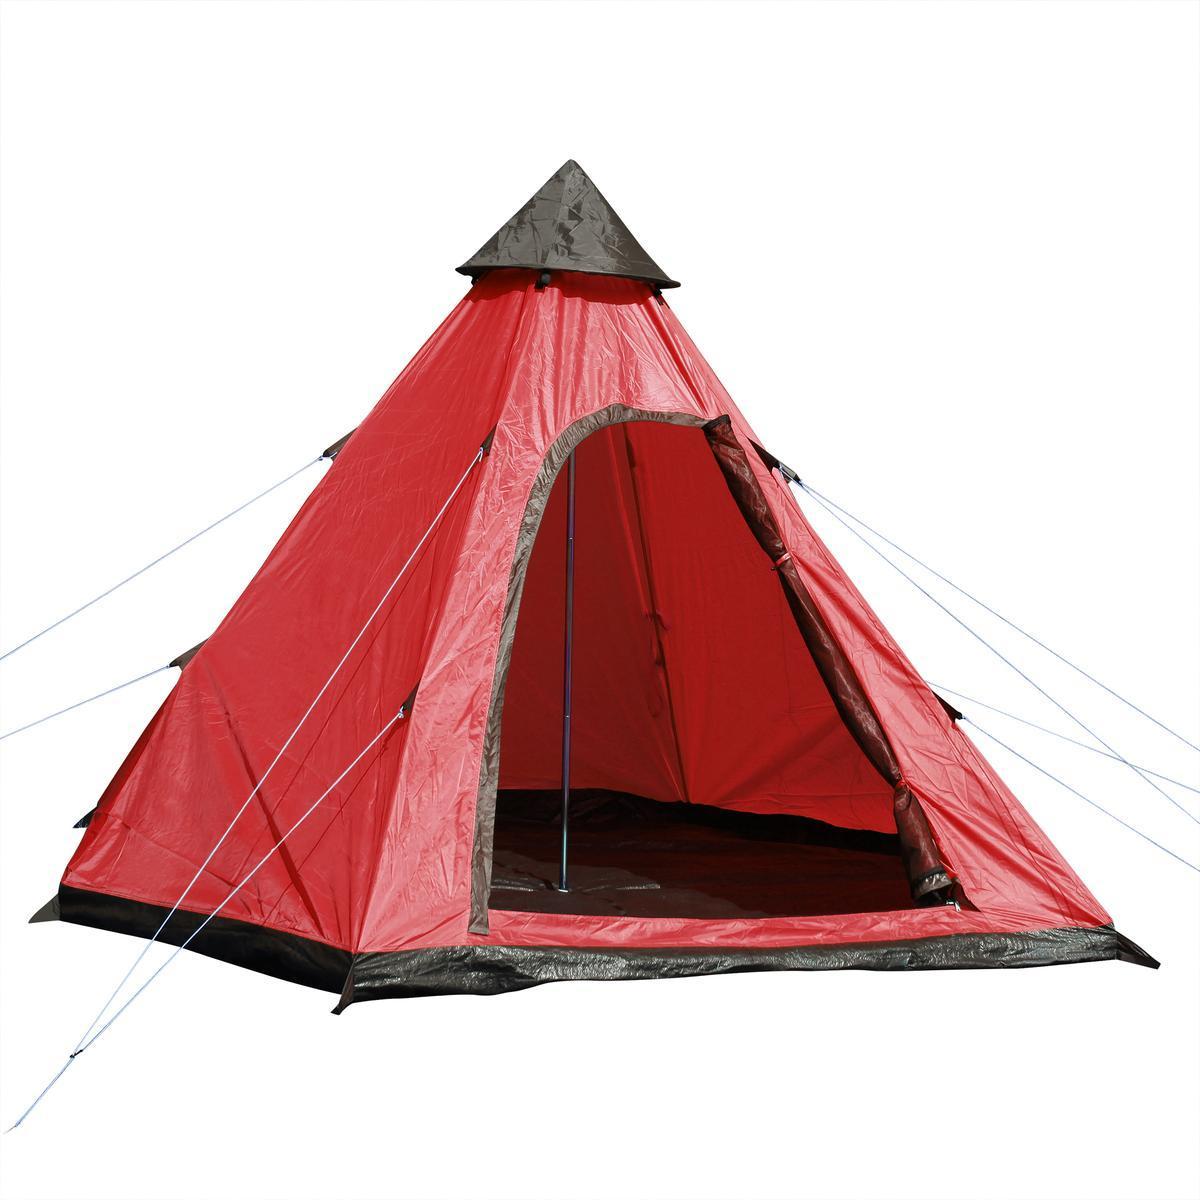 Tente de camping Tipi - 3 x 2.7 x H 2.05 m